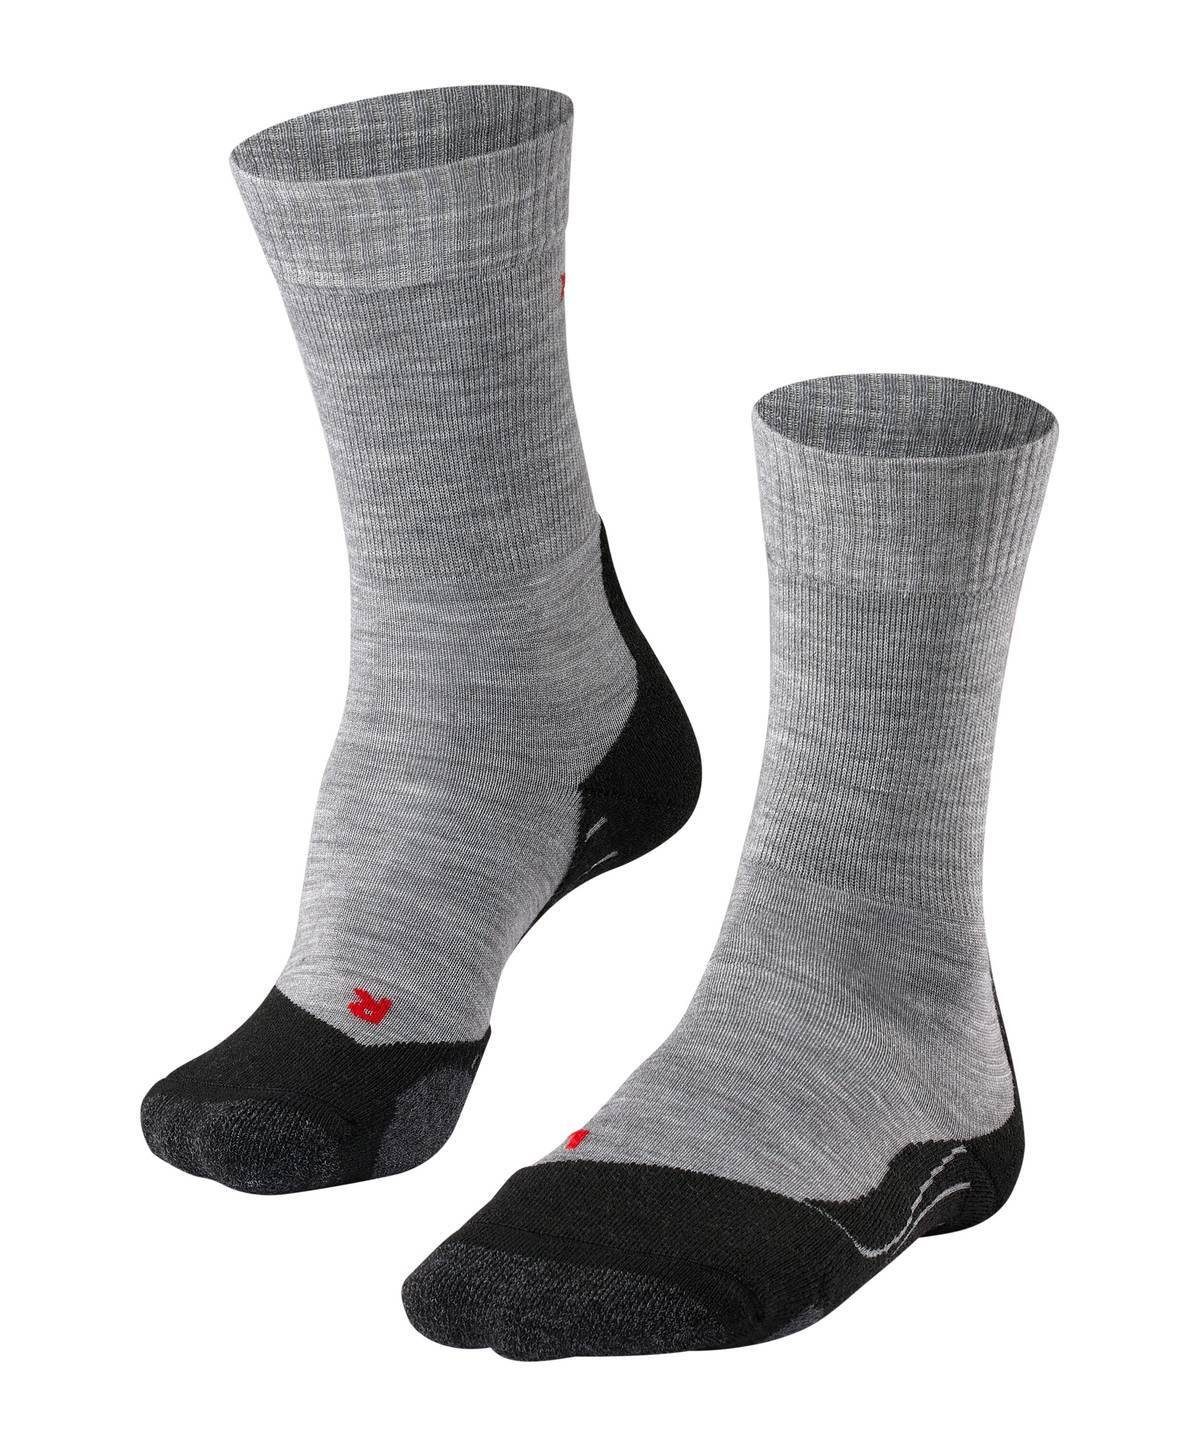 Sportsocken FALKE Socken - Herren TK2, Polsterung Trekking Socken